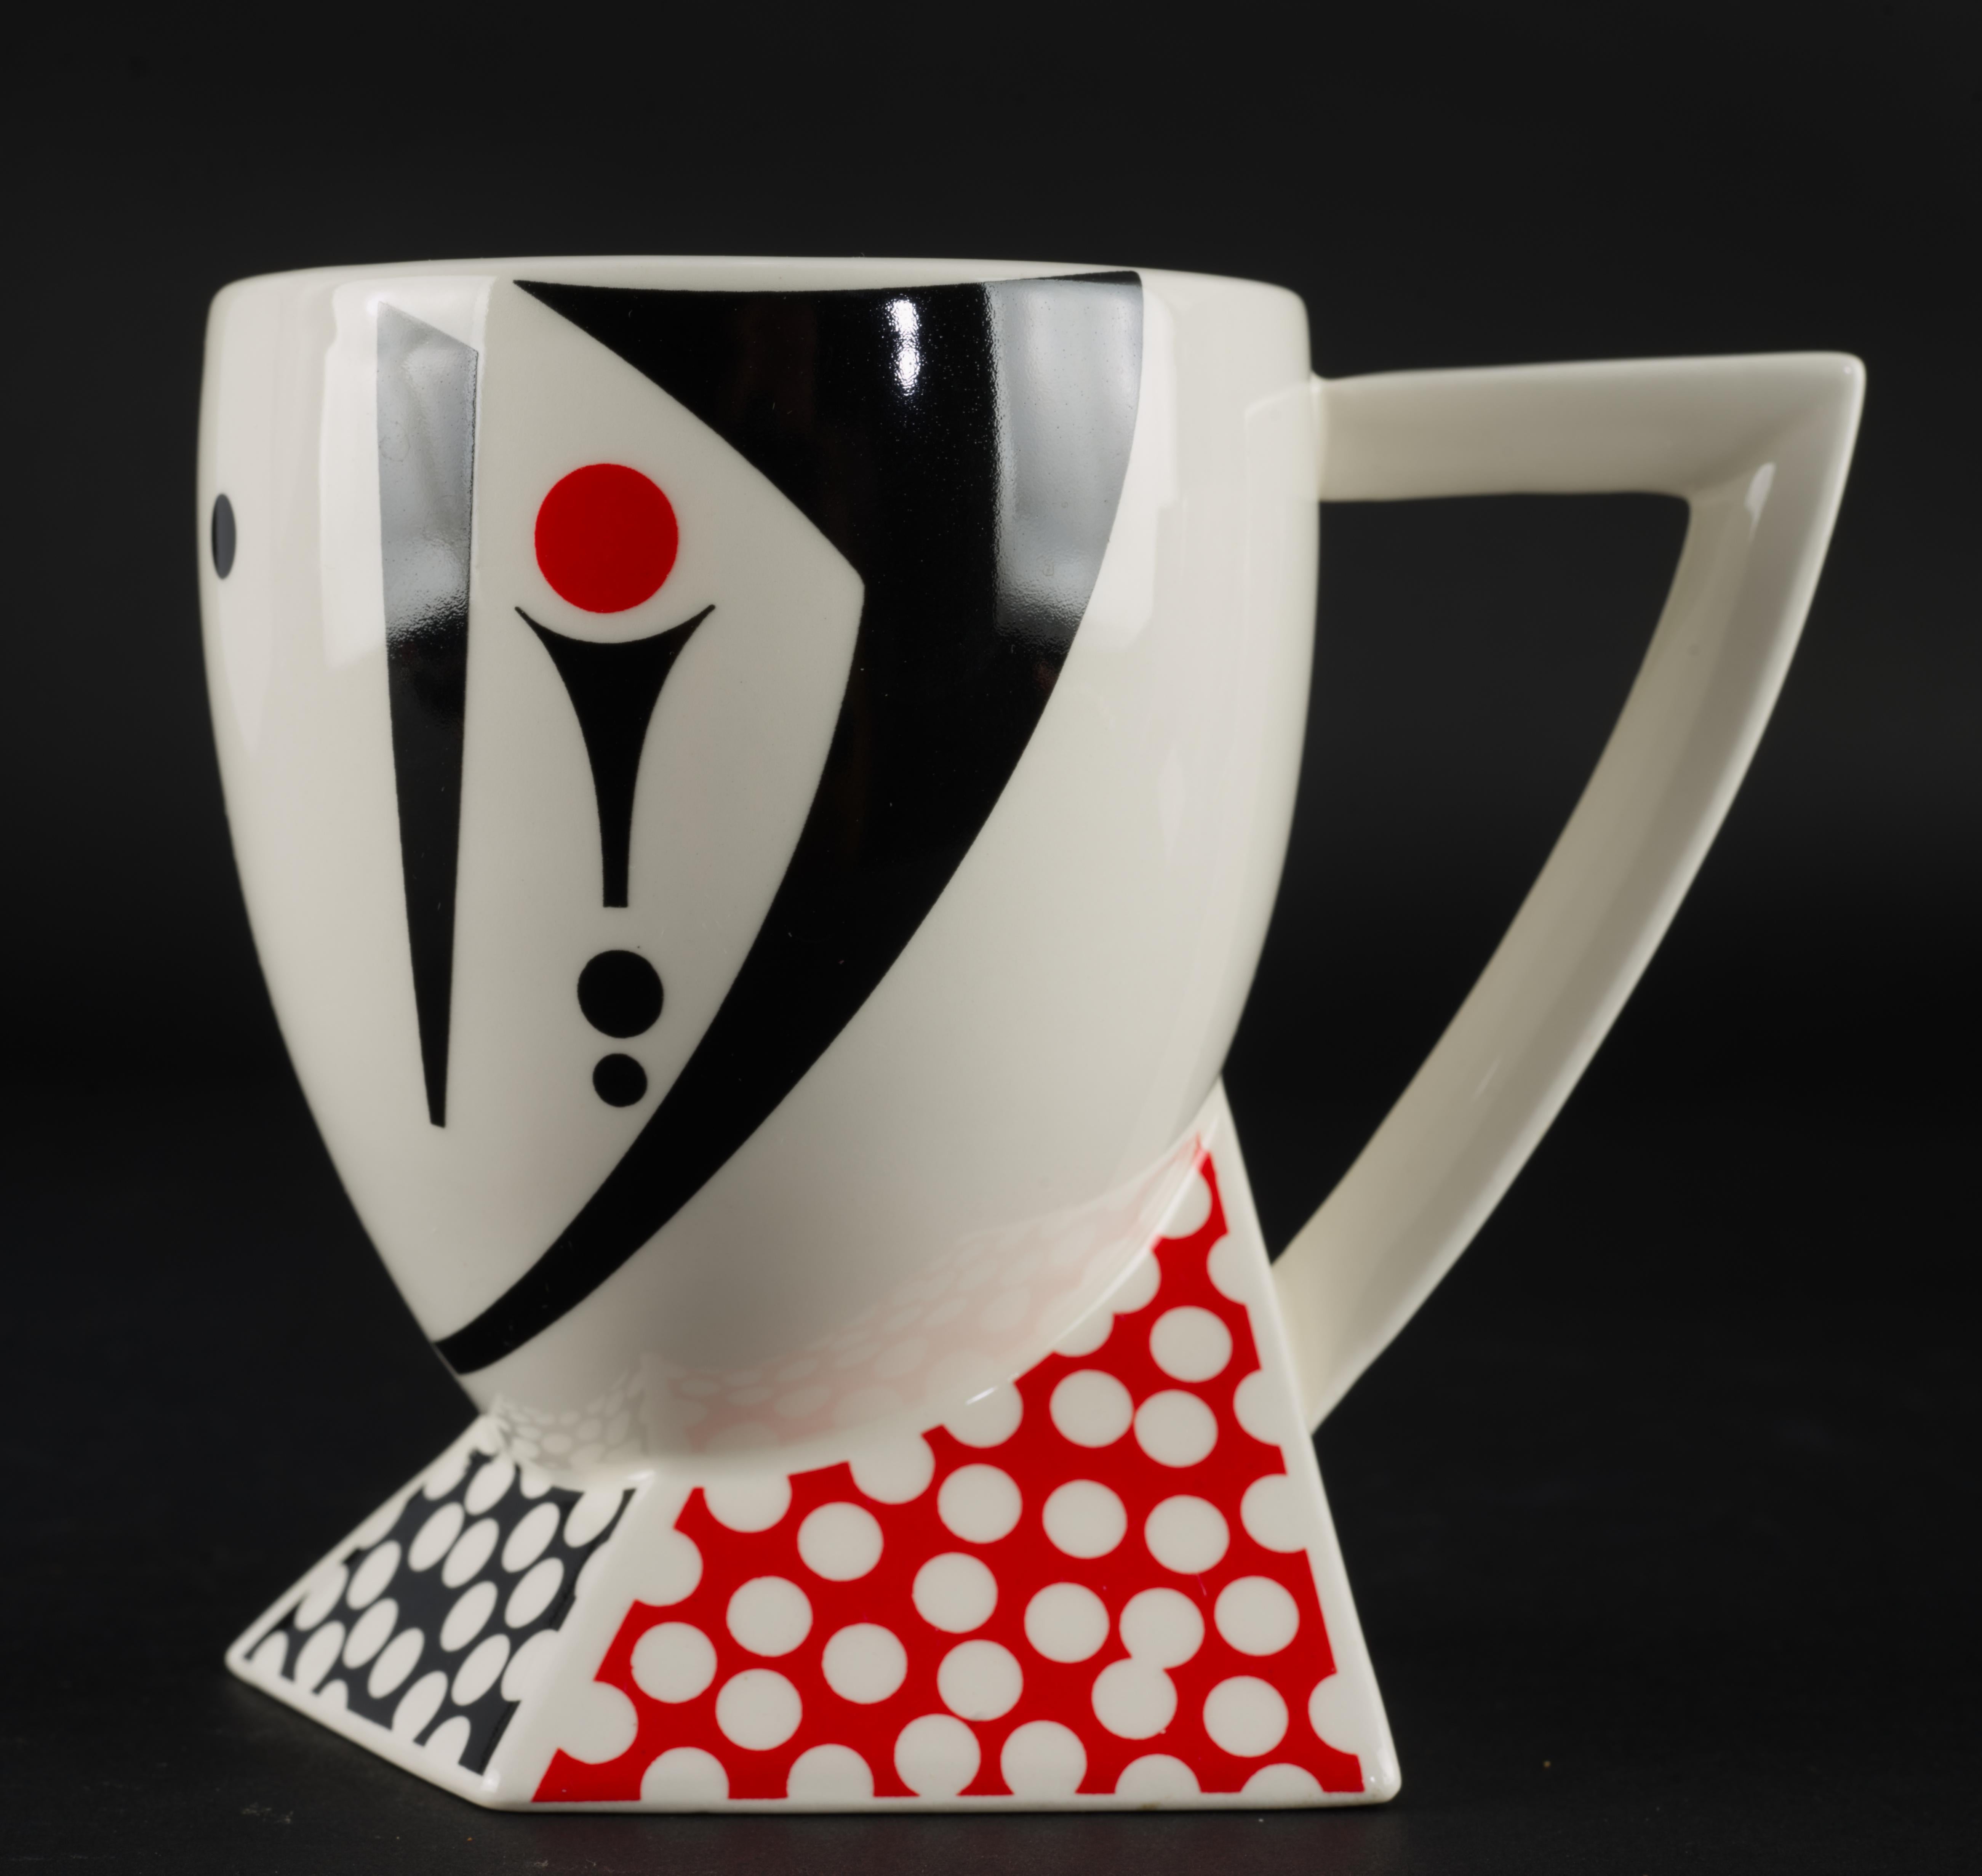 Set de 4 mugs dans le motif Alpha 3, conçu par Kaneaki Fujimori pour Kato Kogei Japan dans les années 1980. La série Alpha 3 se compose de mugs, d'assiettes à salade/de détente et de plats de service décoratifs. Les 4 mugs du set sont décorés de